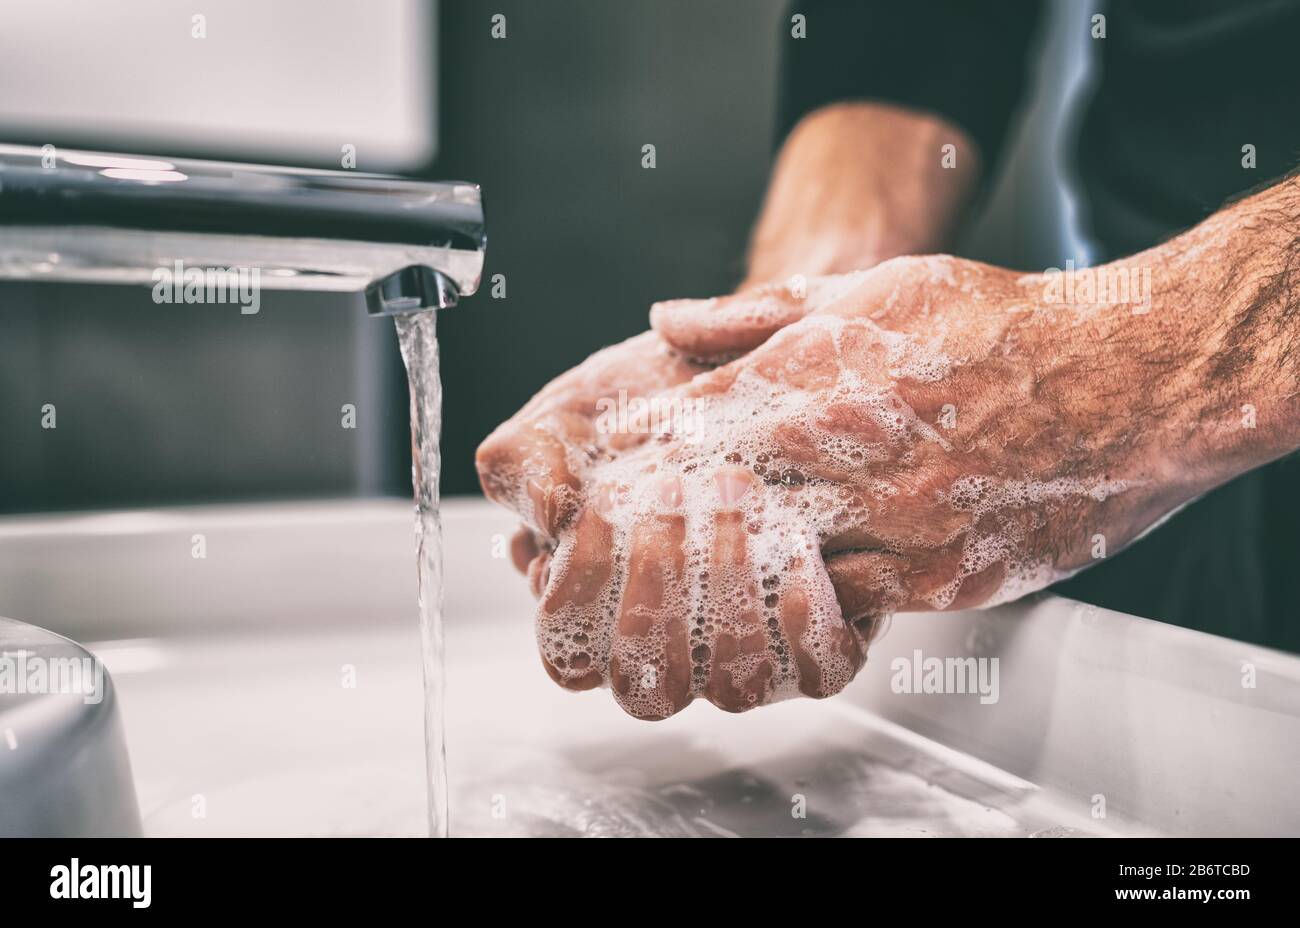 Prévention de la pandémie de coronavirus laver les mains avec de l'eau chaude savonneuse et , frotter les ongles et les doigts se laver fréquemment ou à l'aide de gel désinfectant pour les mains. Banque D'Images